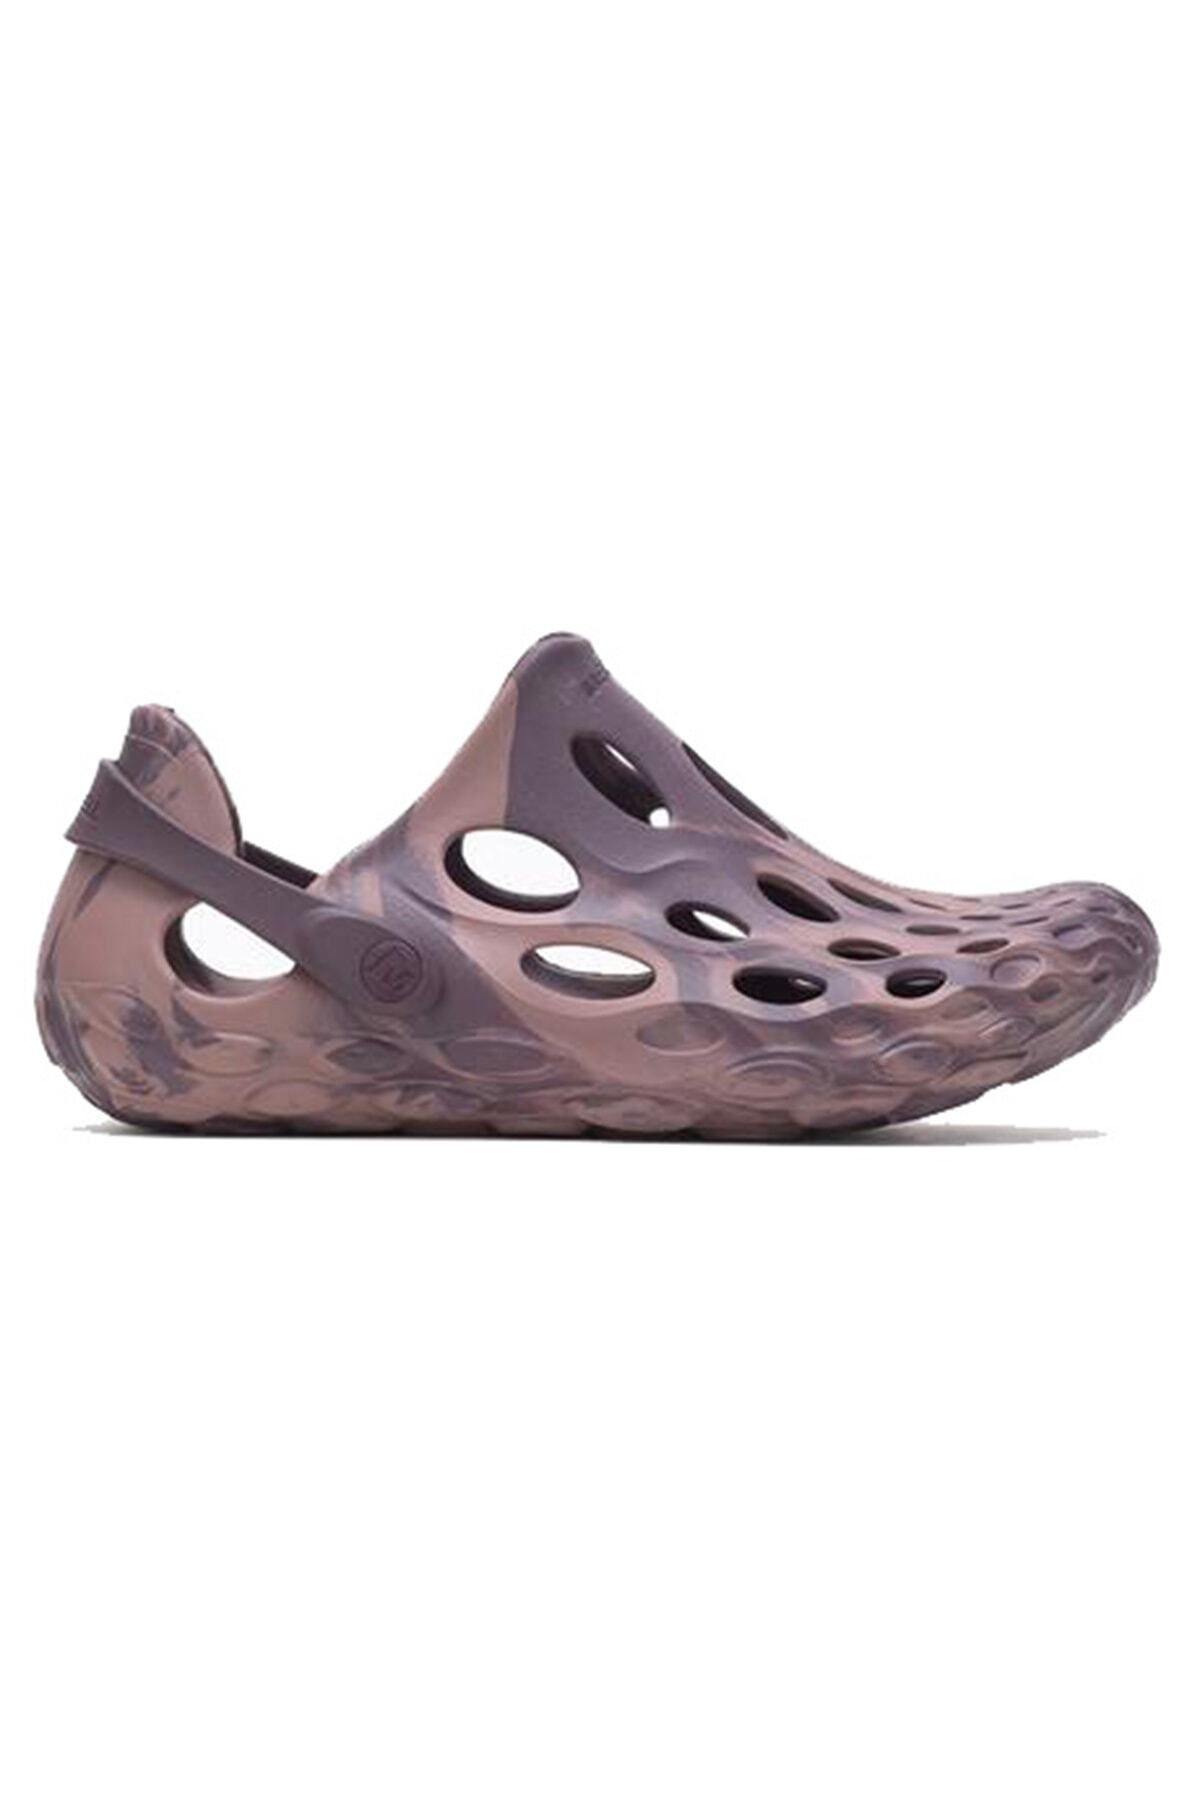 Merrell Hydro Moc Kadın Çok Renkli Günlük Stil Sandalet J004254